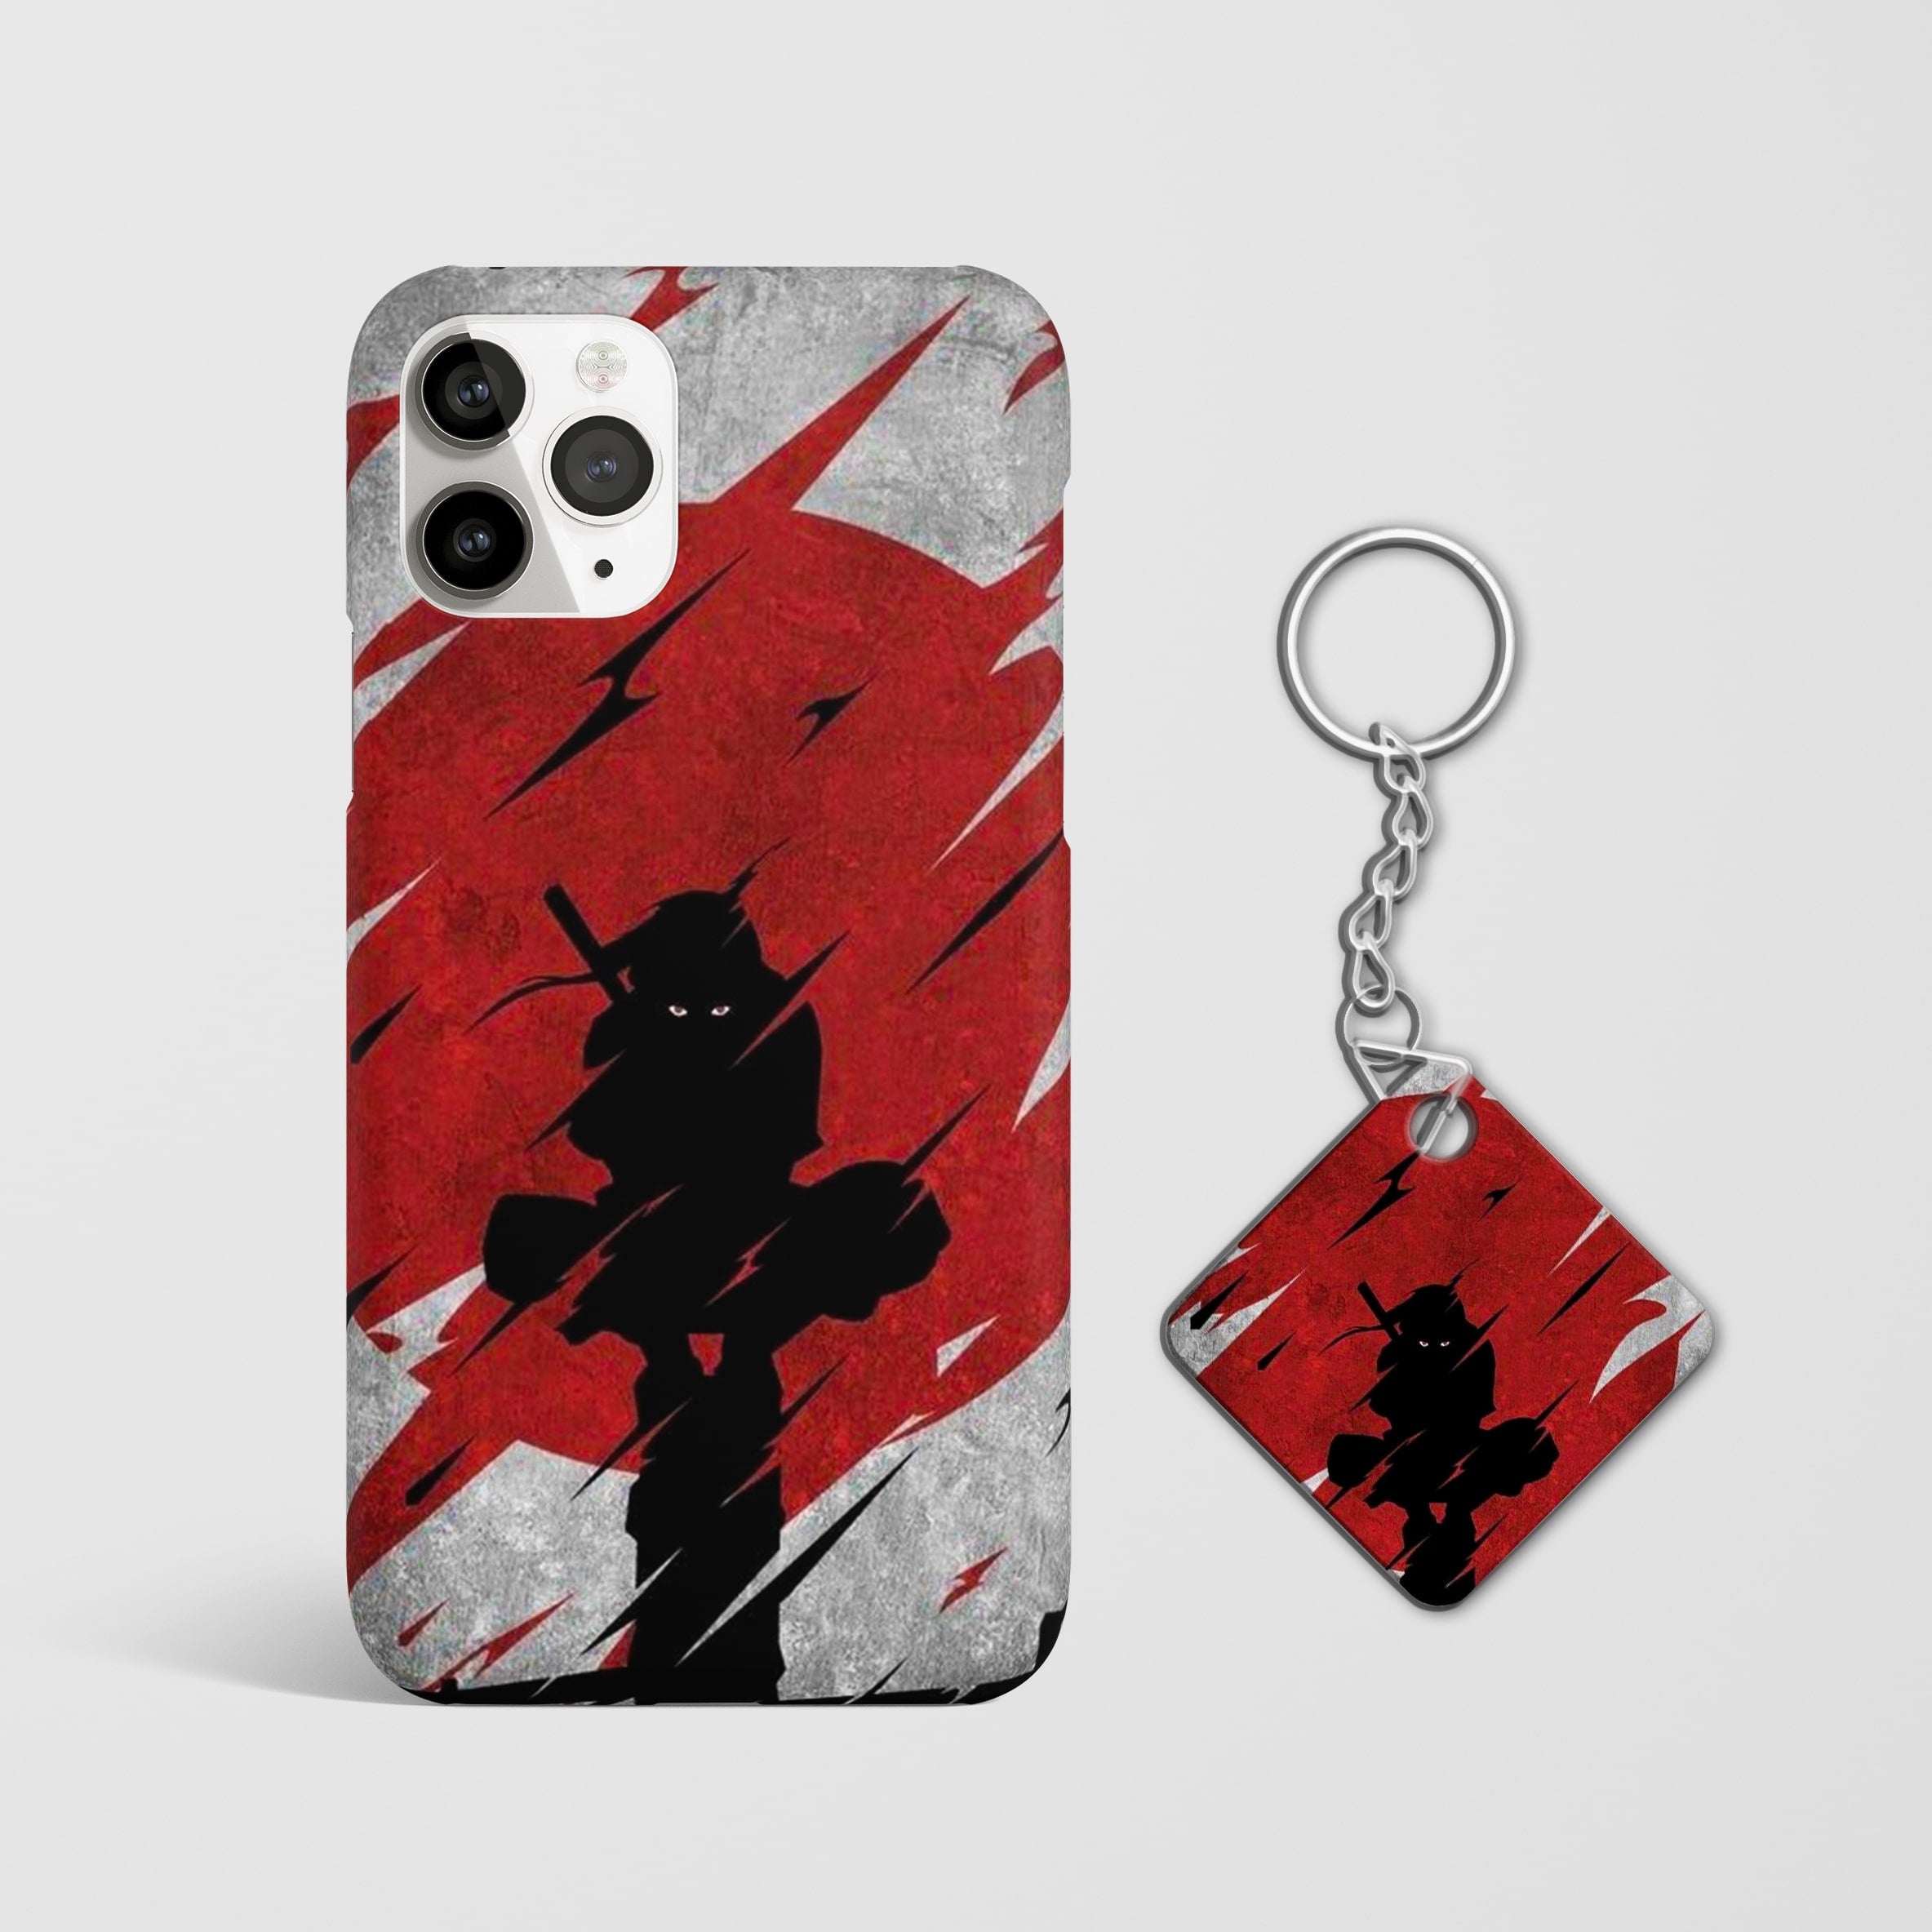 Sasuke Uchiha Clan Phone Cover with Keychain